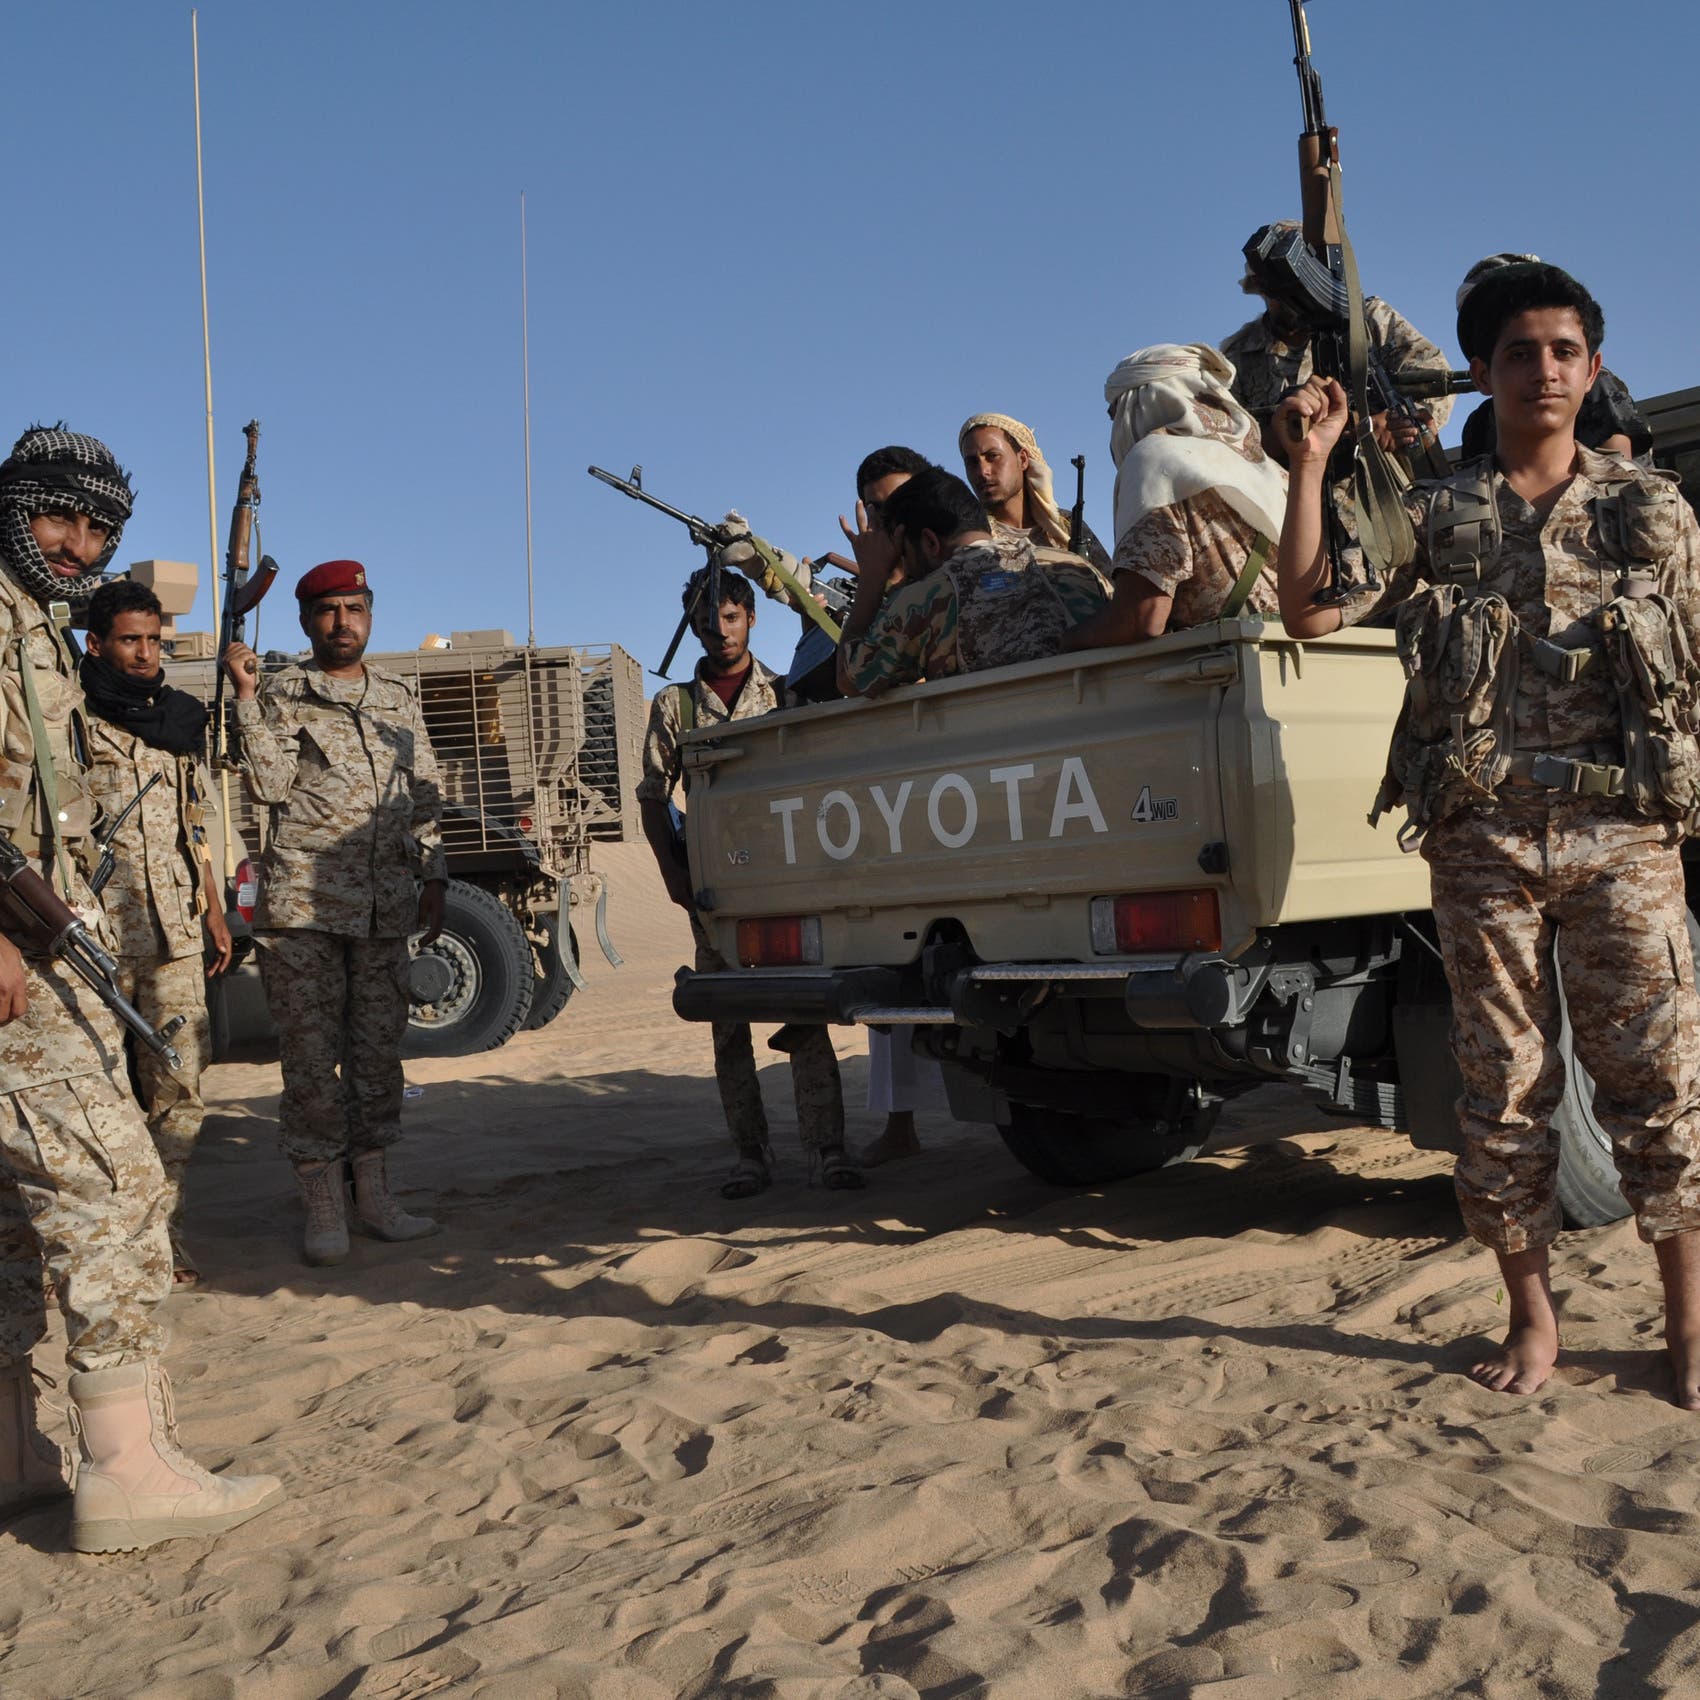 الجيش اليمني: معارك مأرب استنزفت قدرات الحوثي القتالية